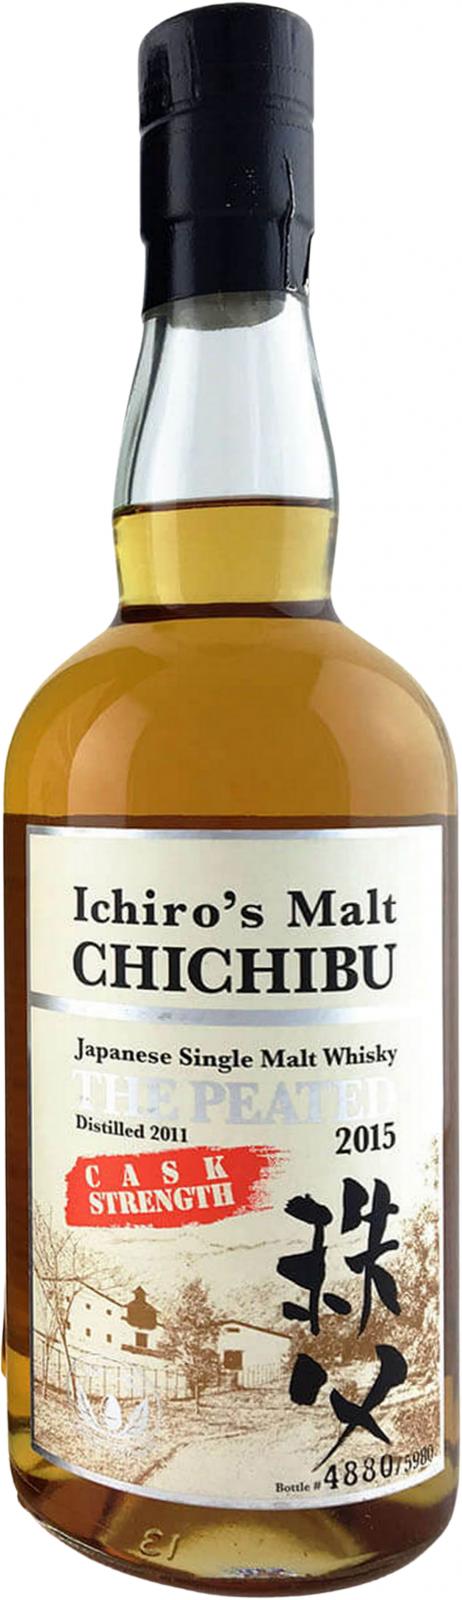 Chichibu 2011